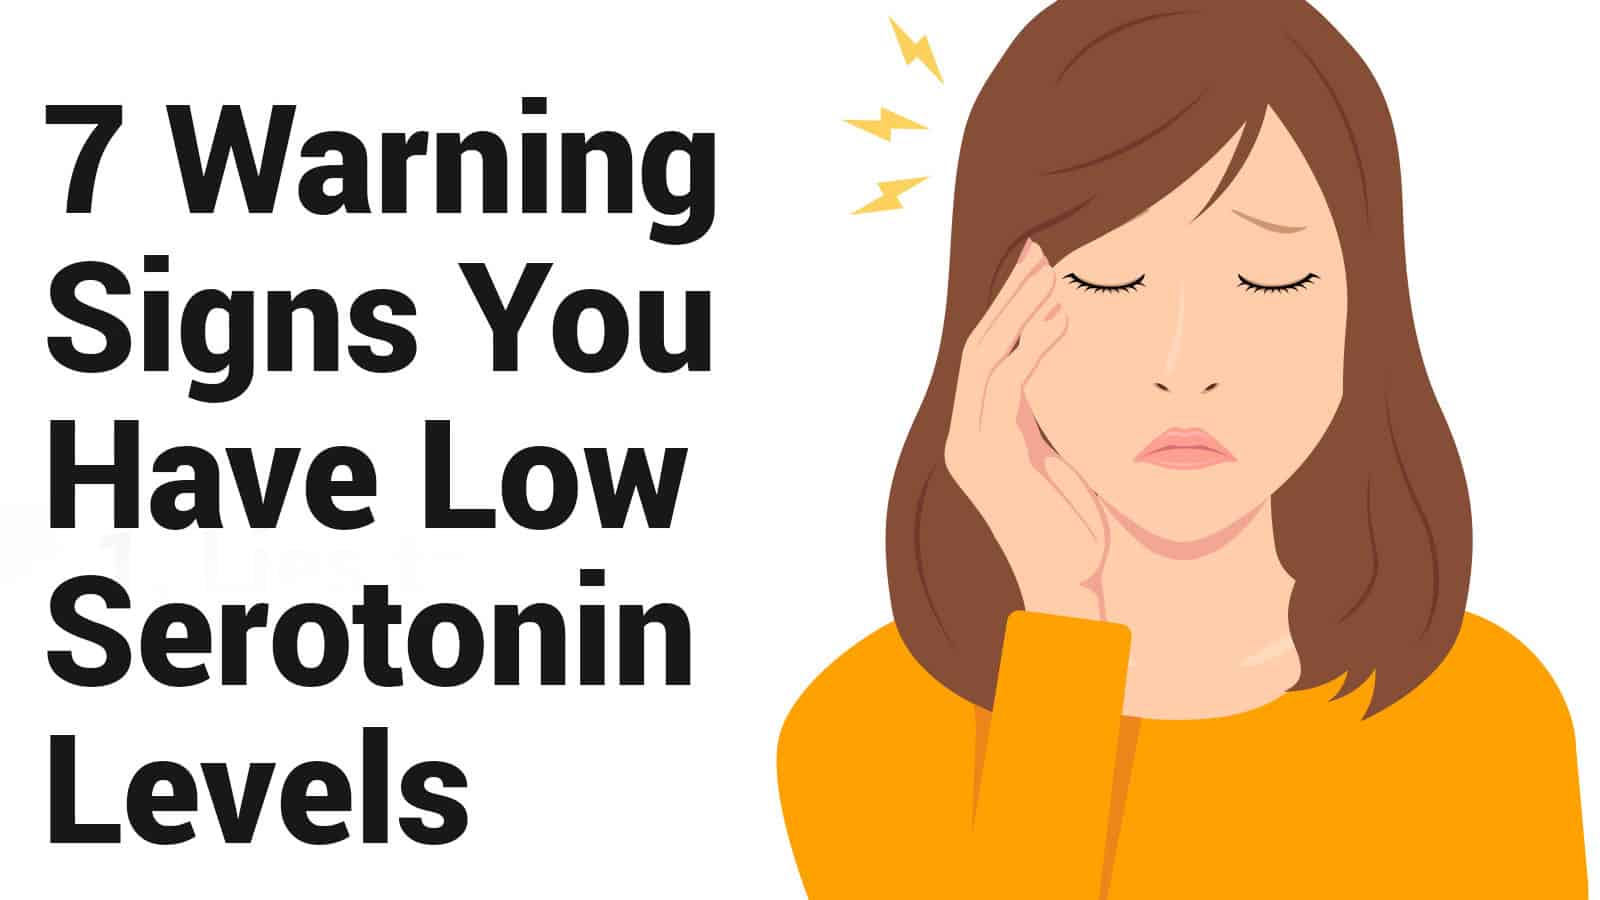 Signs of Serotonin Deficiency